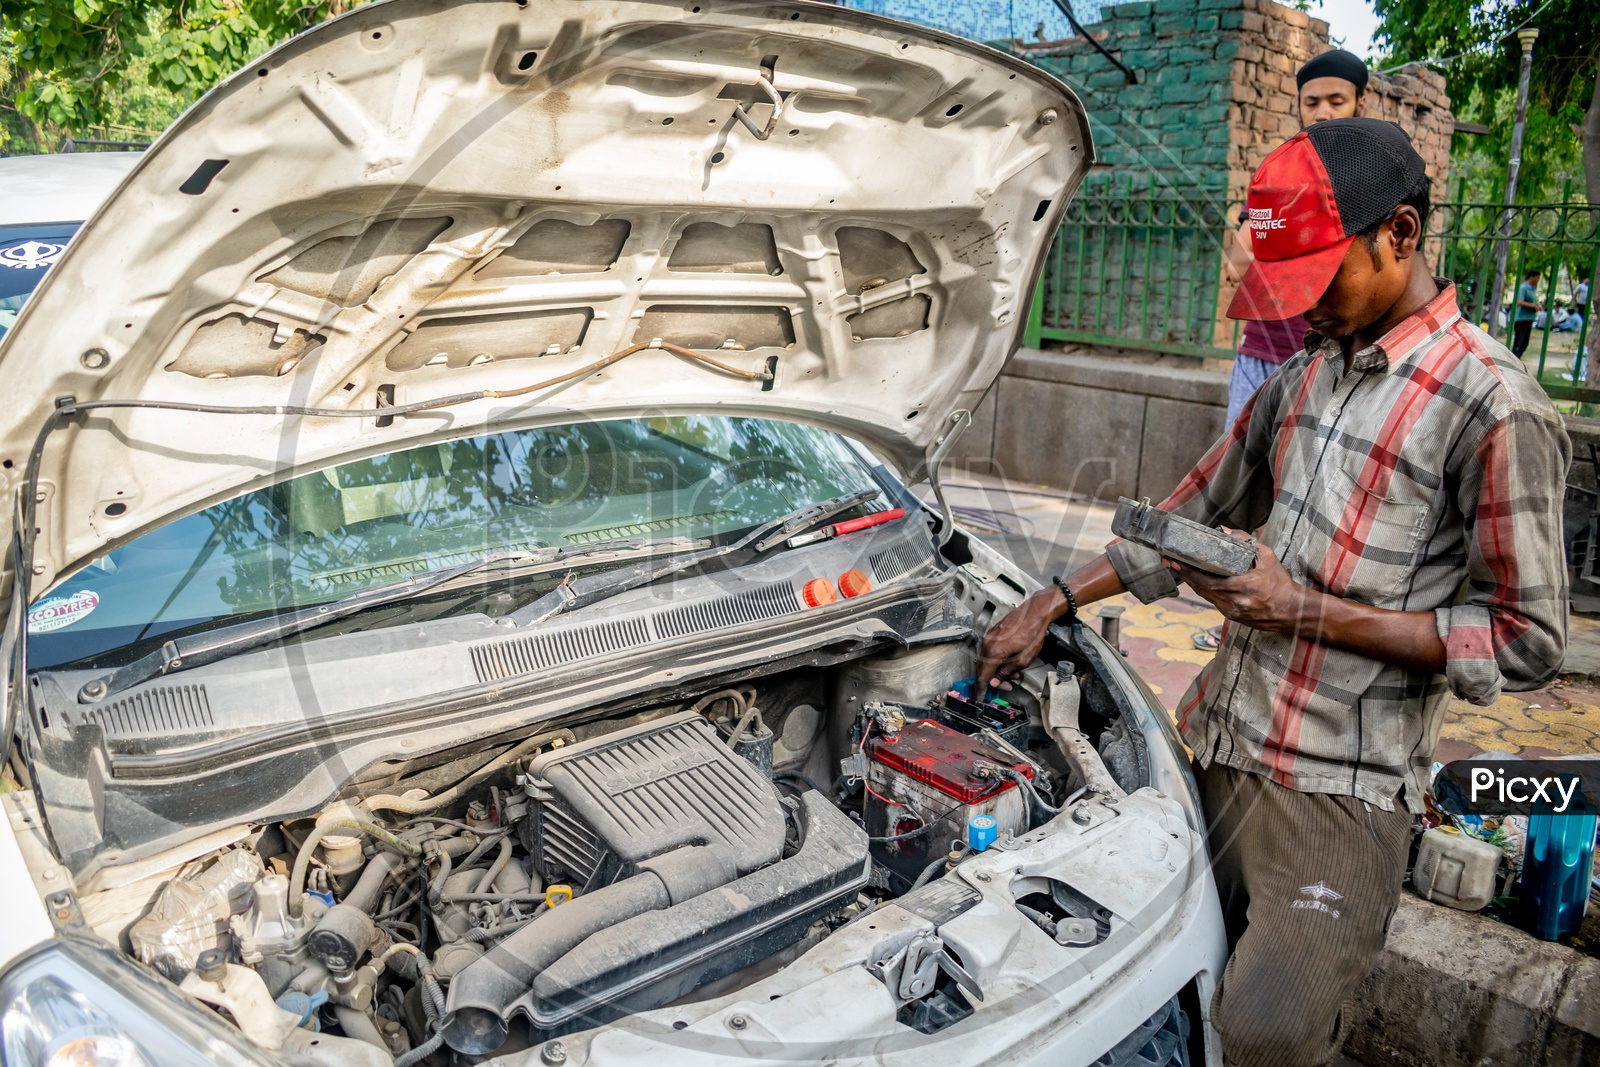 A mechanic repairing a car